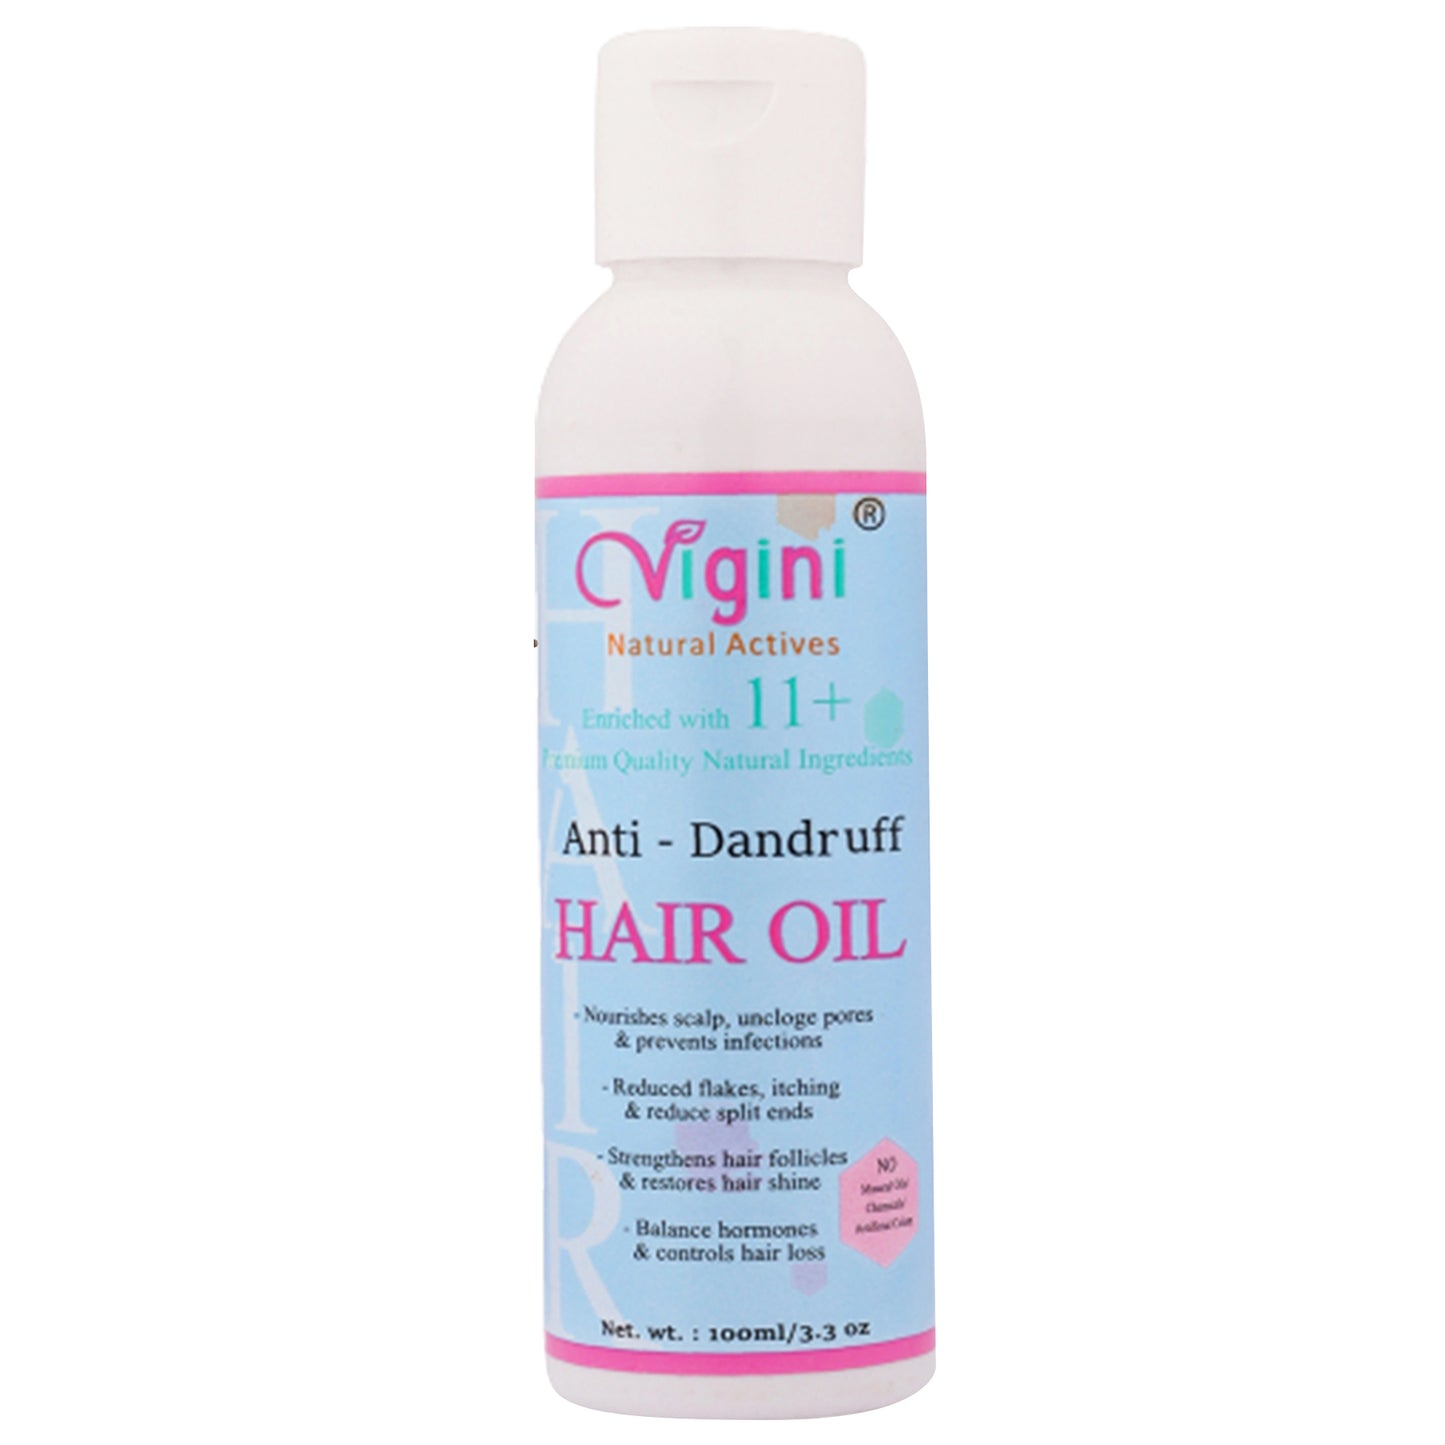 Vigini Anti-Dandruff Pre Shampoo Hair Oil, 100ml